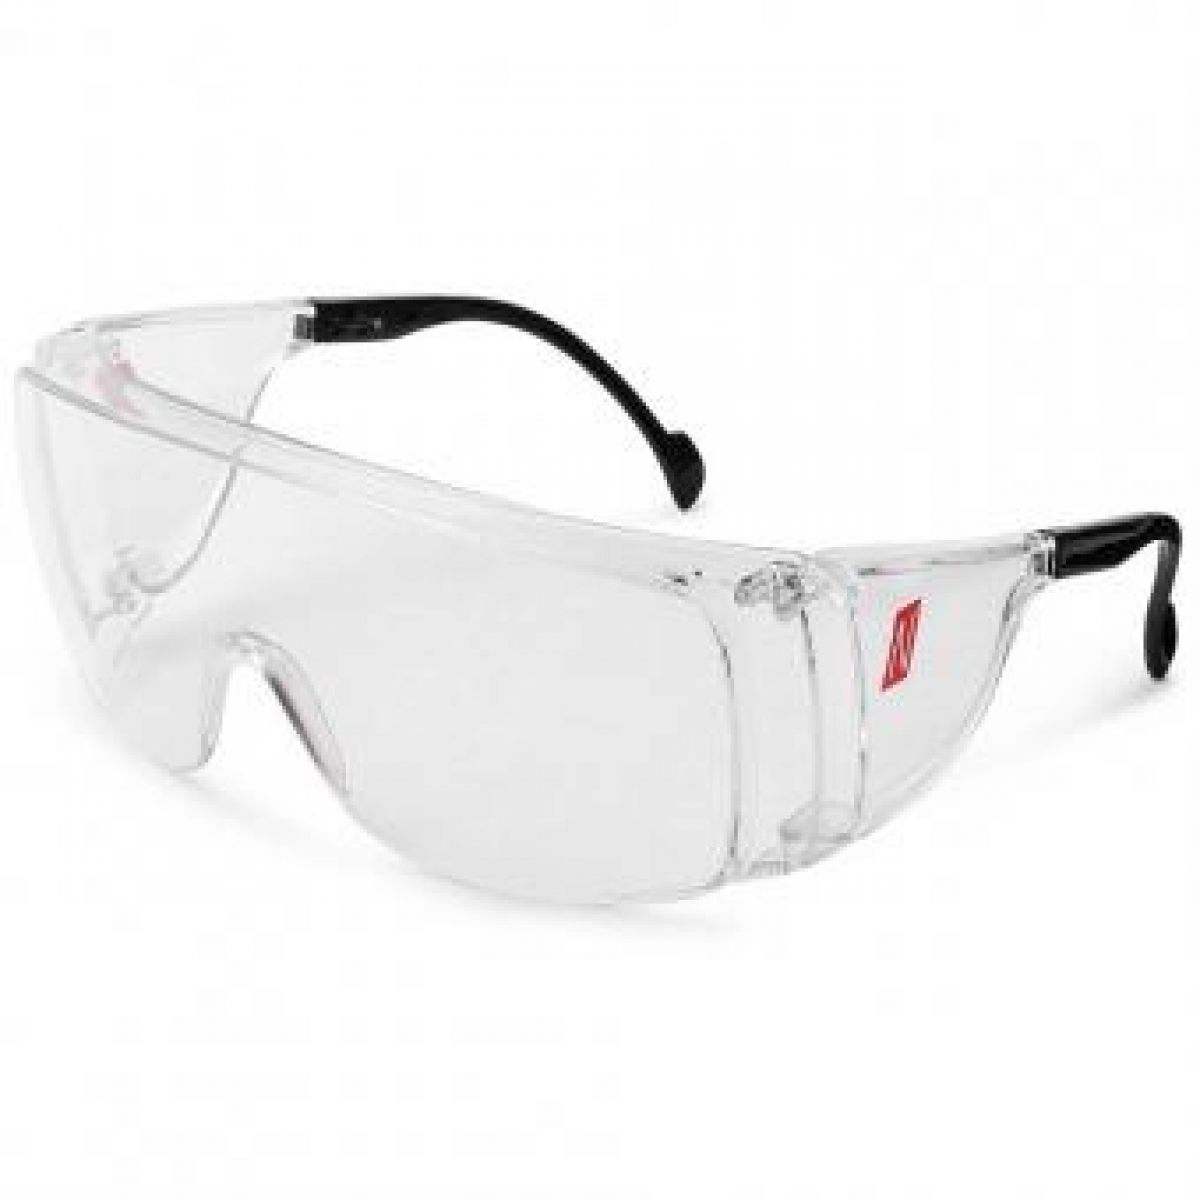 NITRAS VISION PROTECT OTG, Schutzbrille, Tragkrper schwarz / transparent, Sichtscheiben klar, EN 166